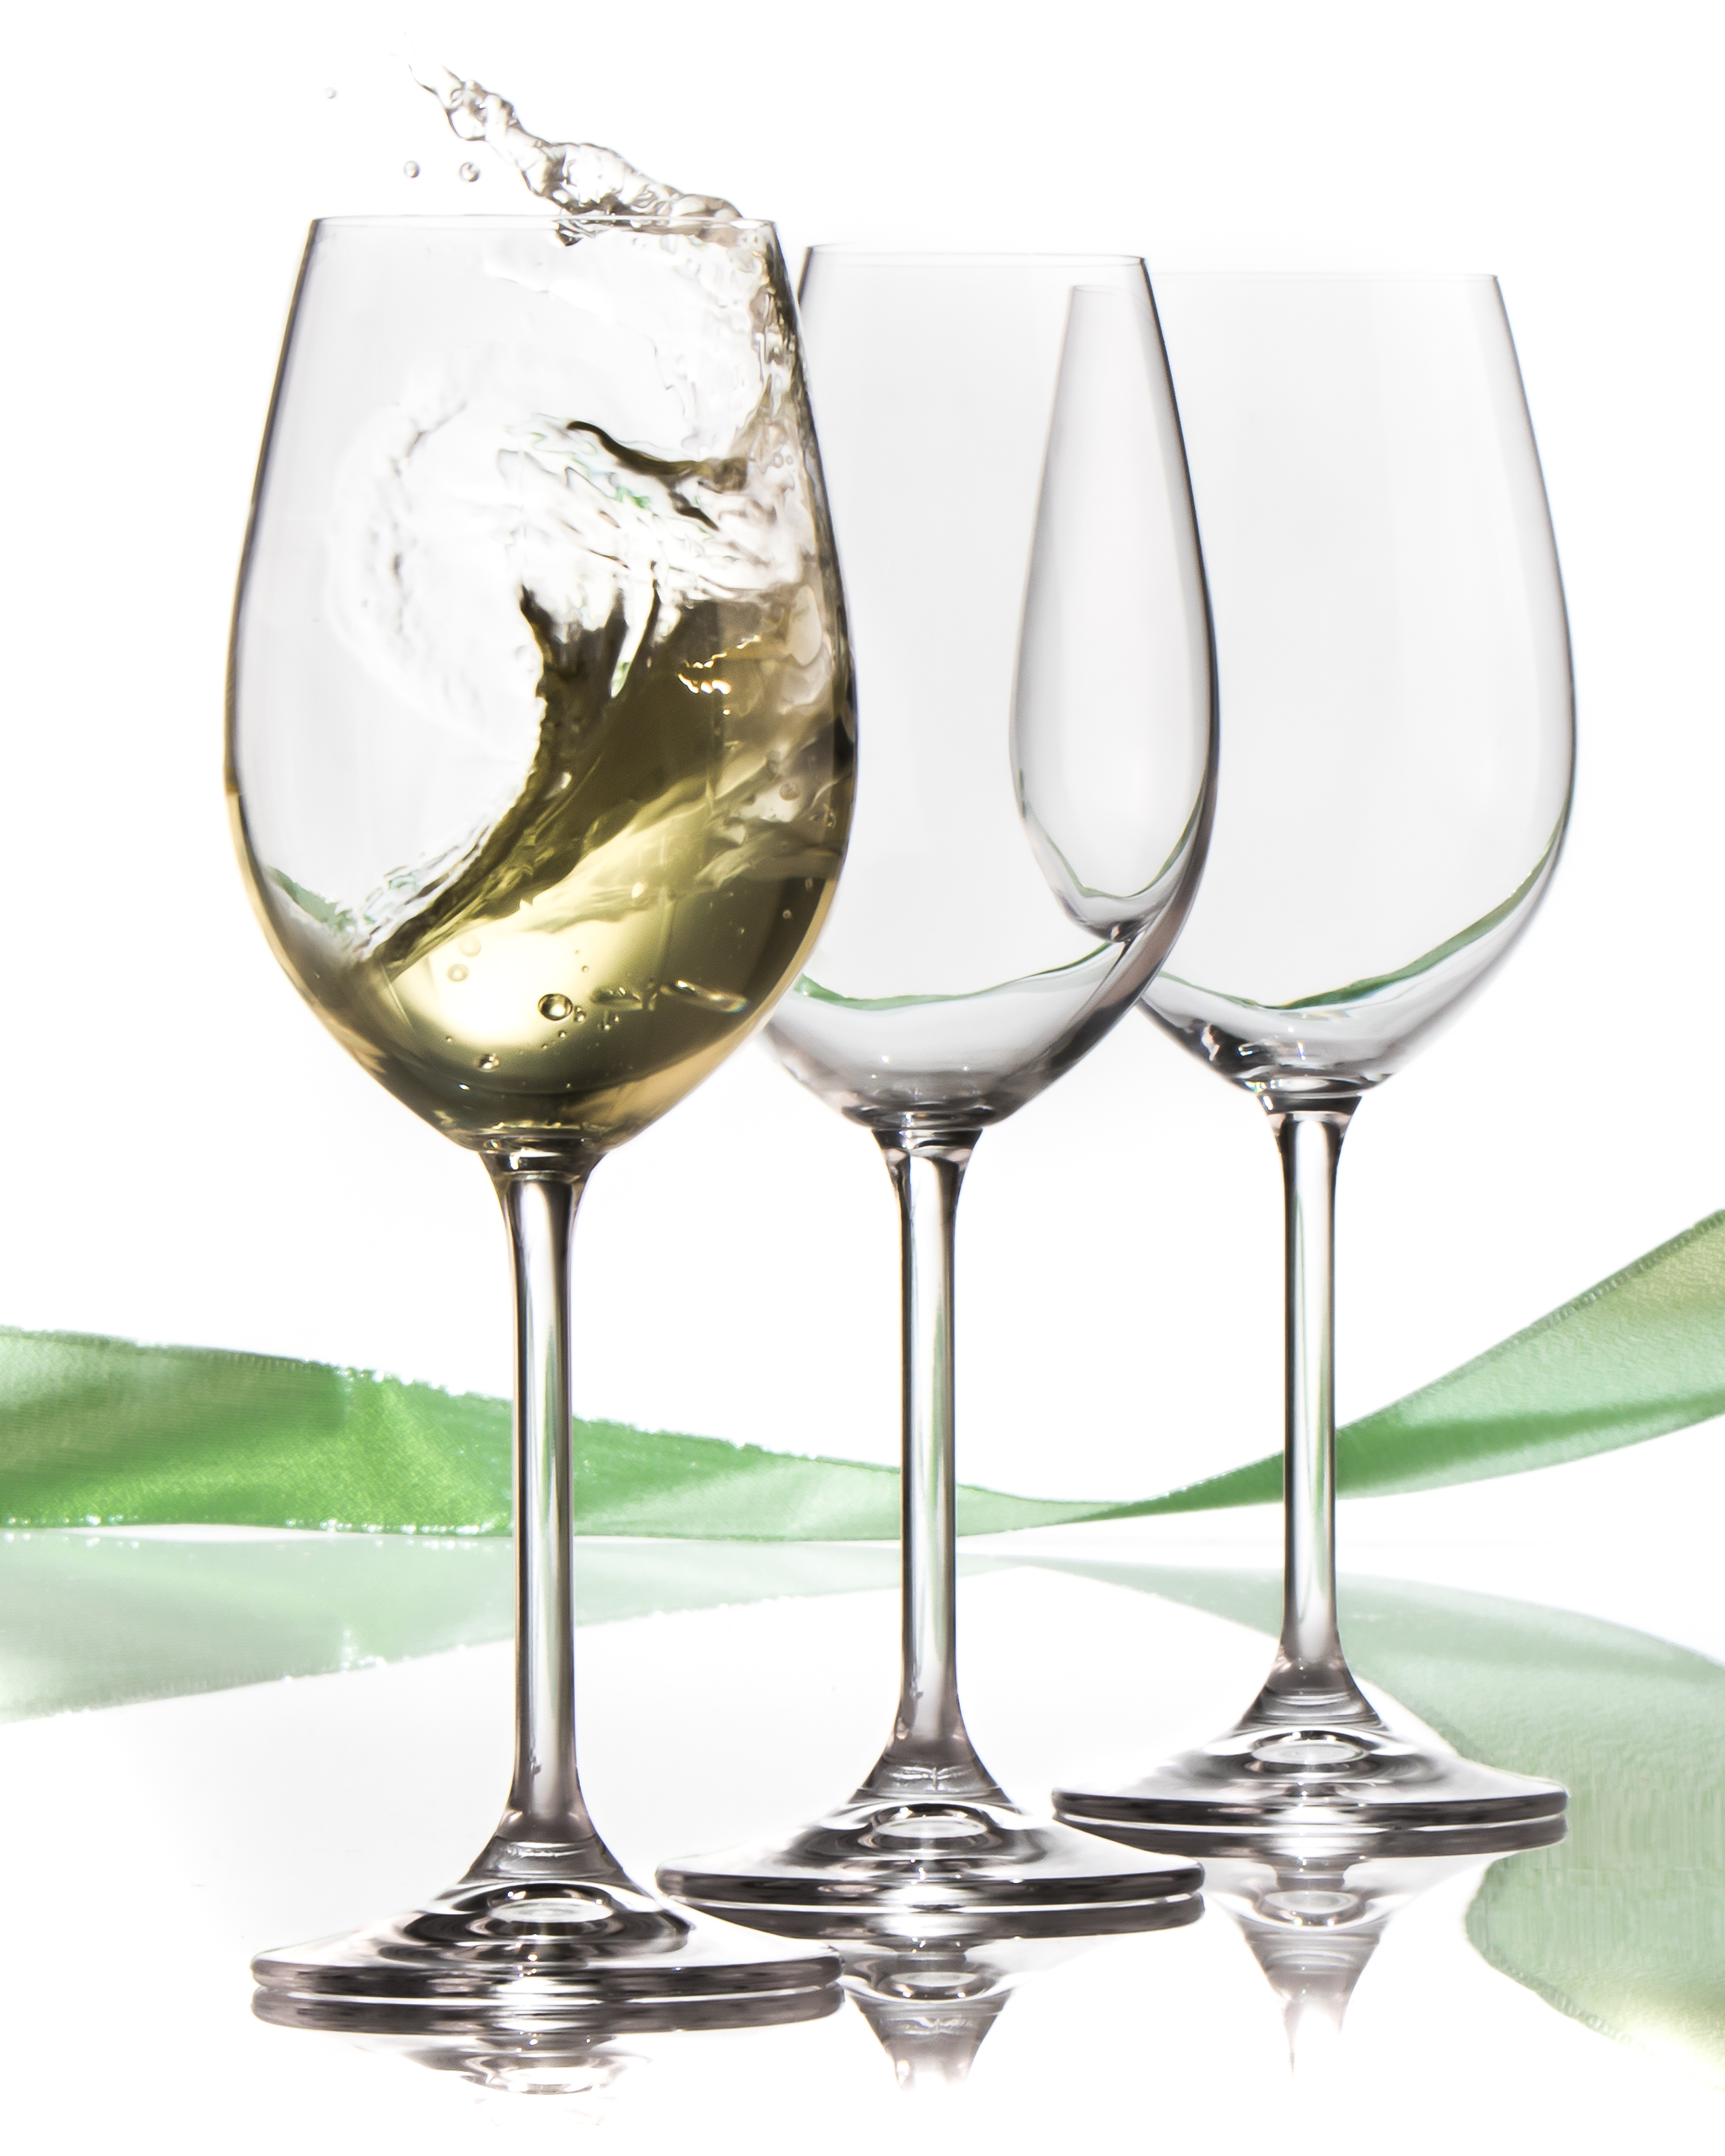 white wine glasses